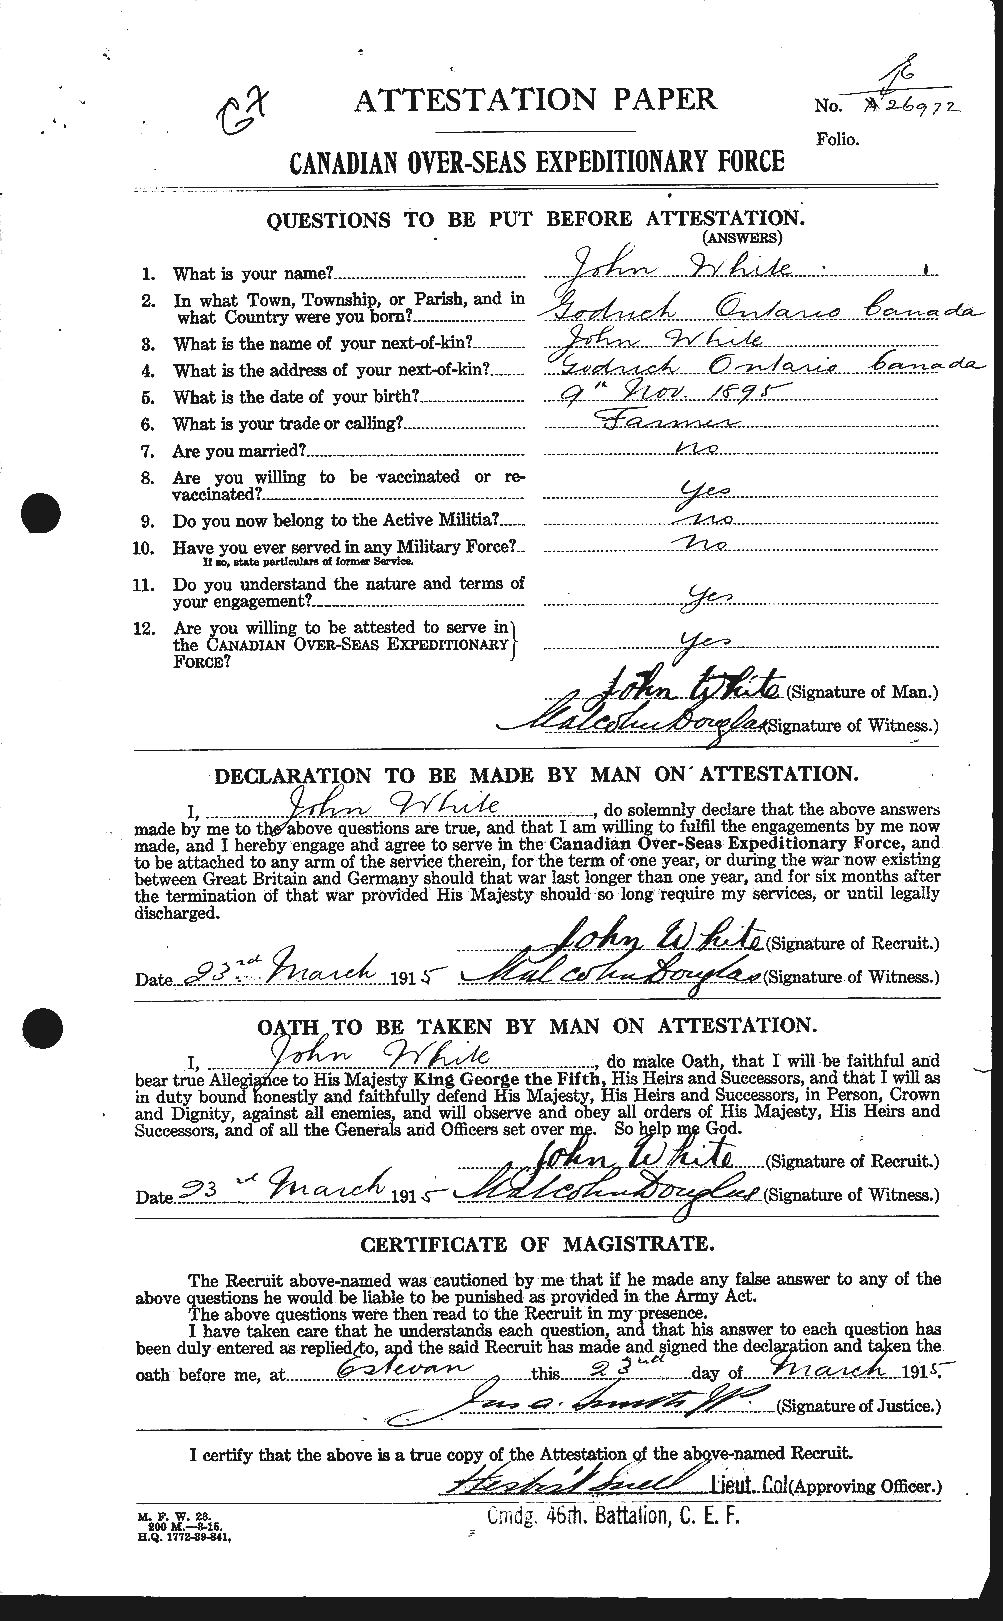 Dossiers du Personnel de la Première Guerre mondiale - CEC 671488a